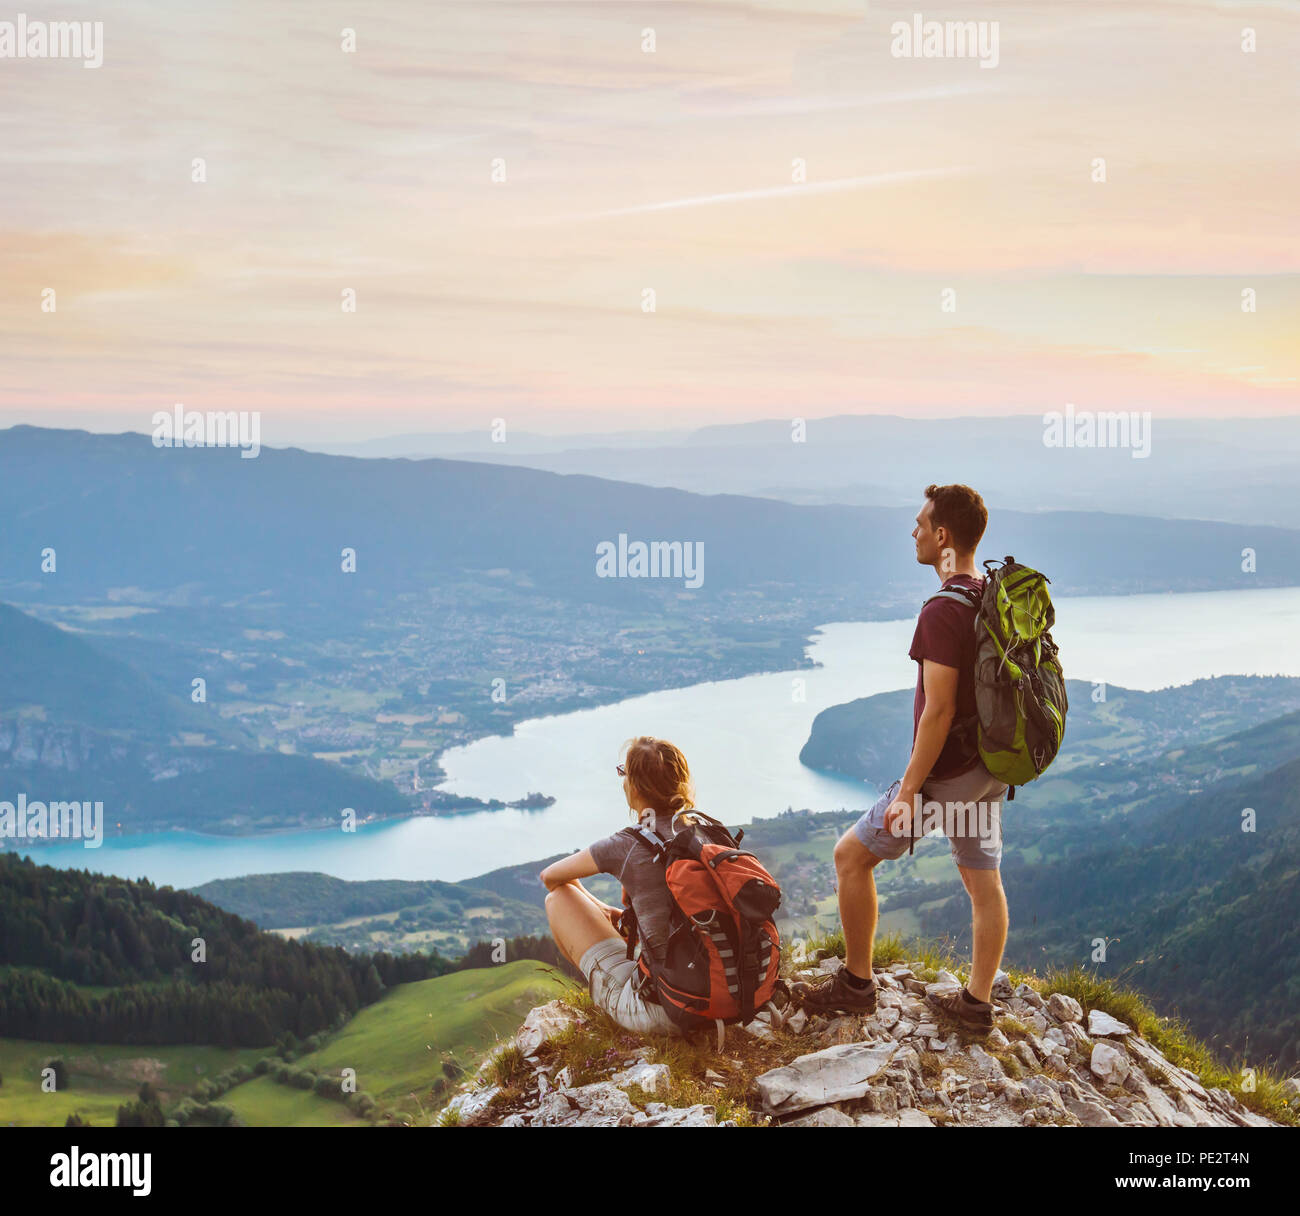 Par de excursionistas relajándose en la cima de la montaña con hermosa vista panorámica al aire libre, dos turistas mochileros durante la caminata, luna de miel de aventura Foto de stock